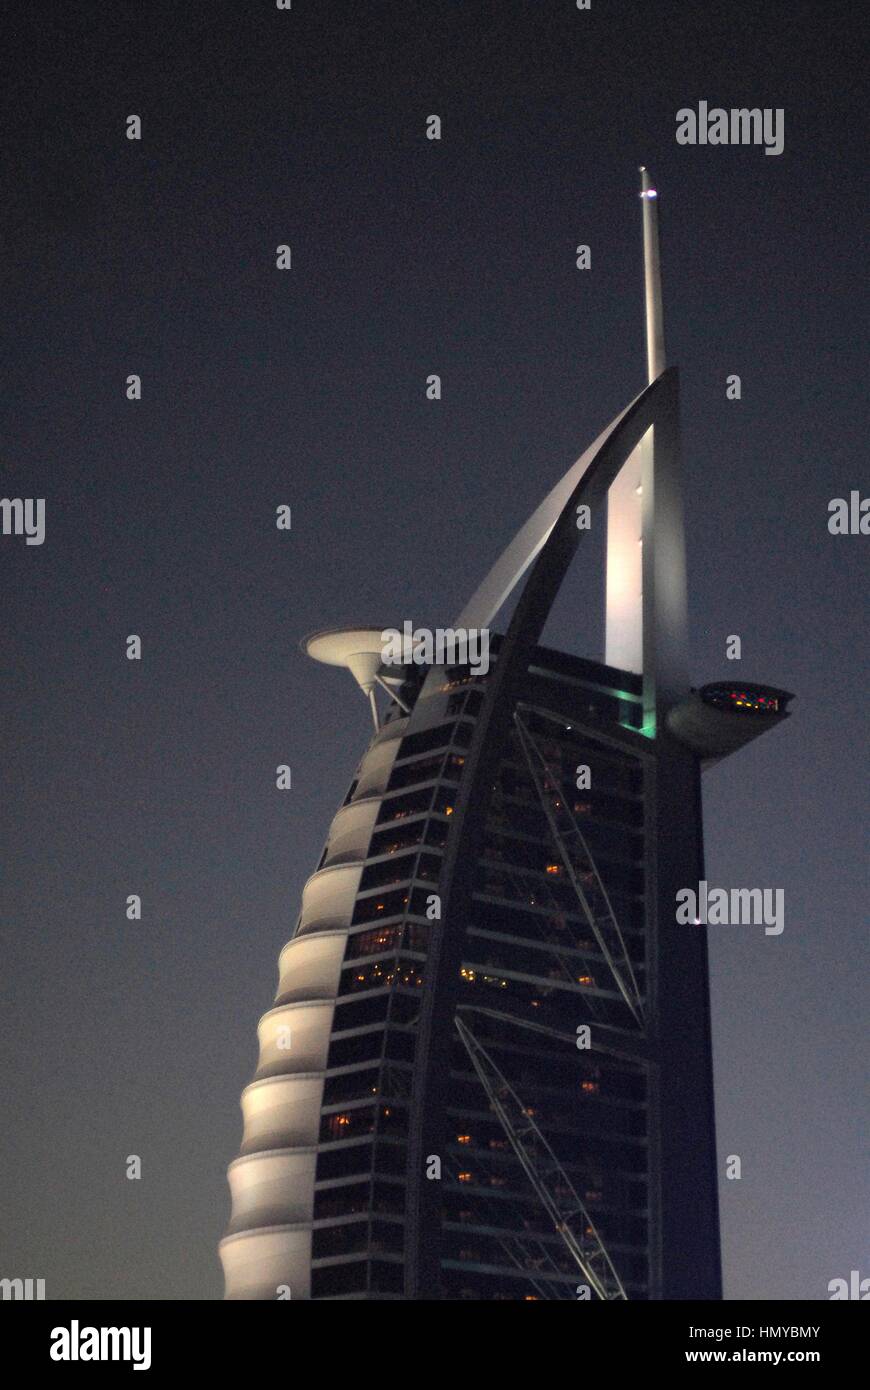 Emirates Post Stockfotos und -bilder Kaufen - Alamy